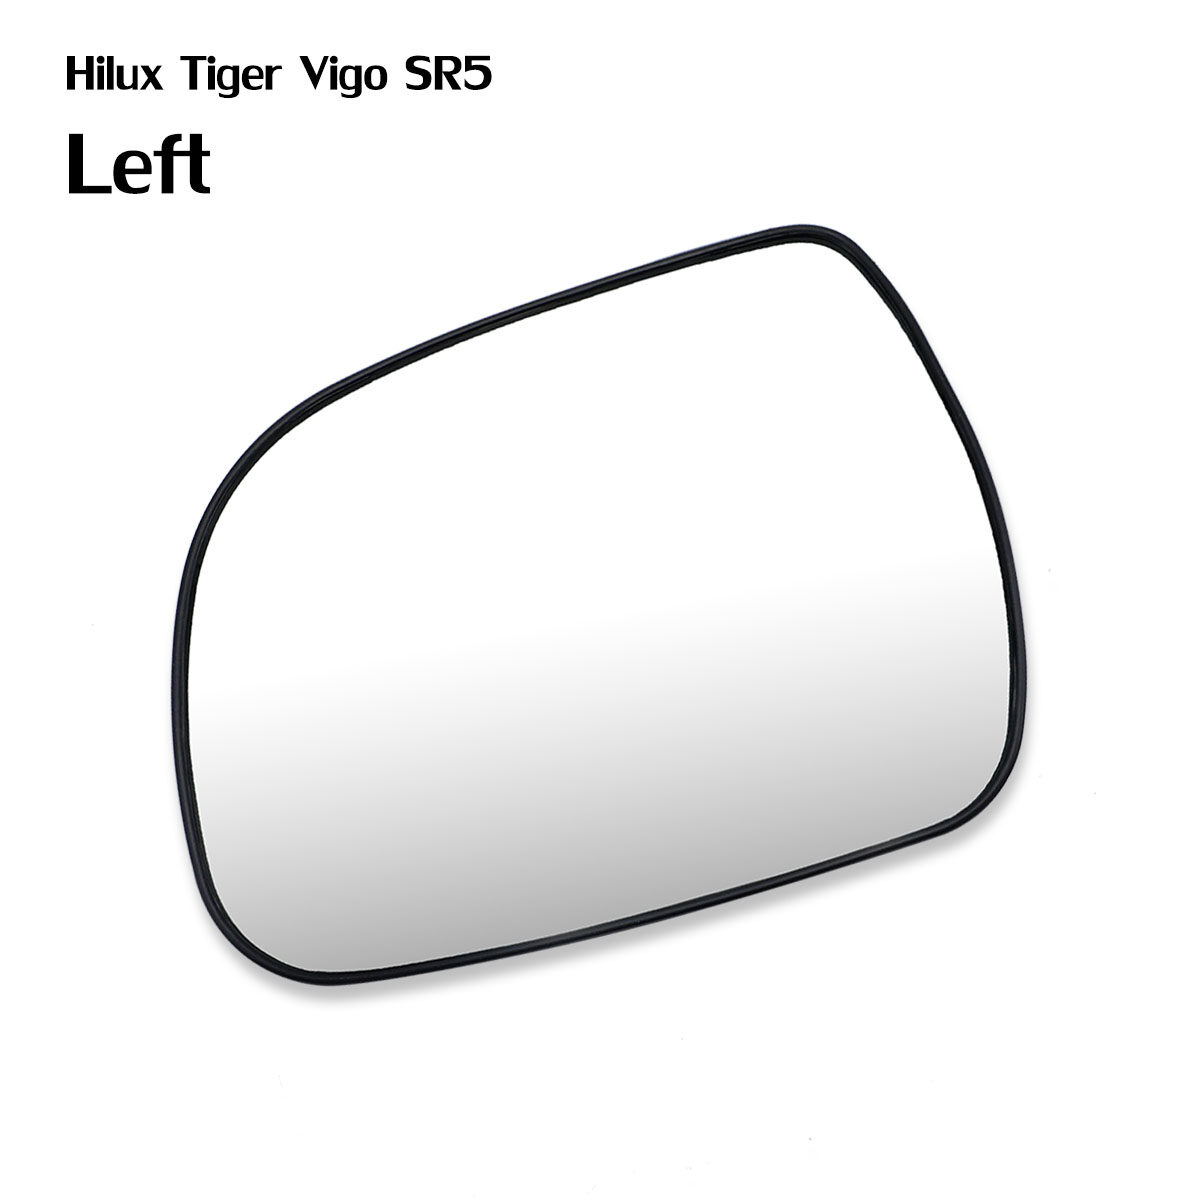 เนื้อเลนส์กระจก ข้าง ซ้าย ใส่ Toyota Hilux New Vigo Champ 2012 - 2014 LH Wing Side Door Mirror Glass Len Hilux Vigo Champ SR5 2012-2014 Toyota มีบริการเก็บเงินปลายทาง